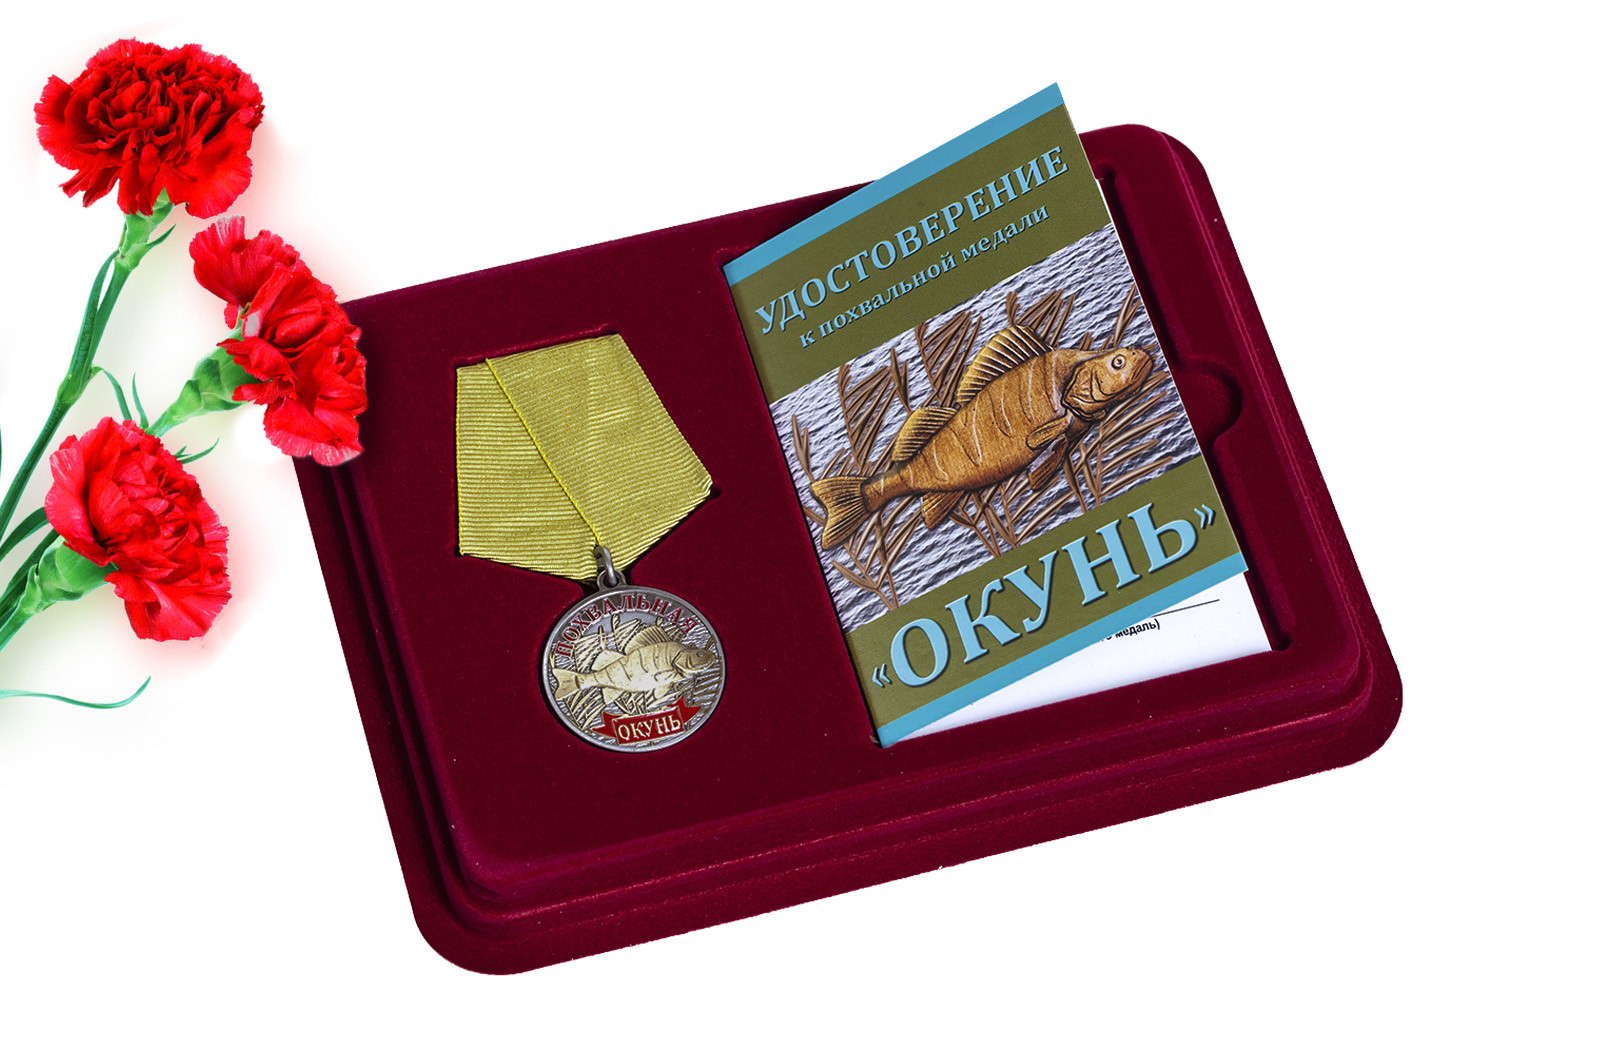 Купить медаль сувенирную Окунь с доставкой в любой город